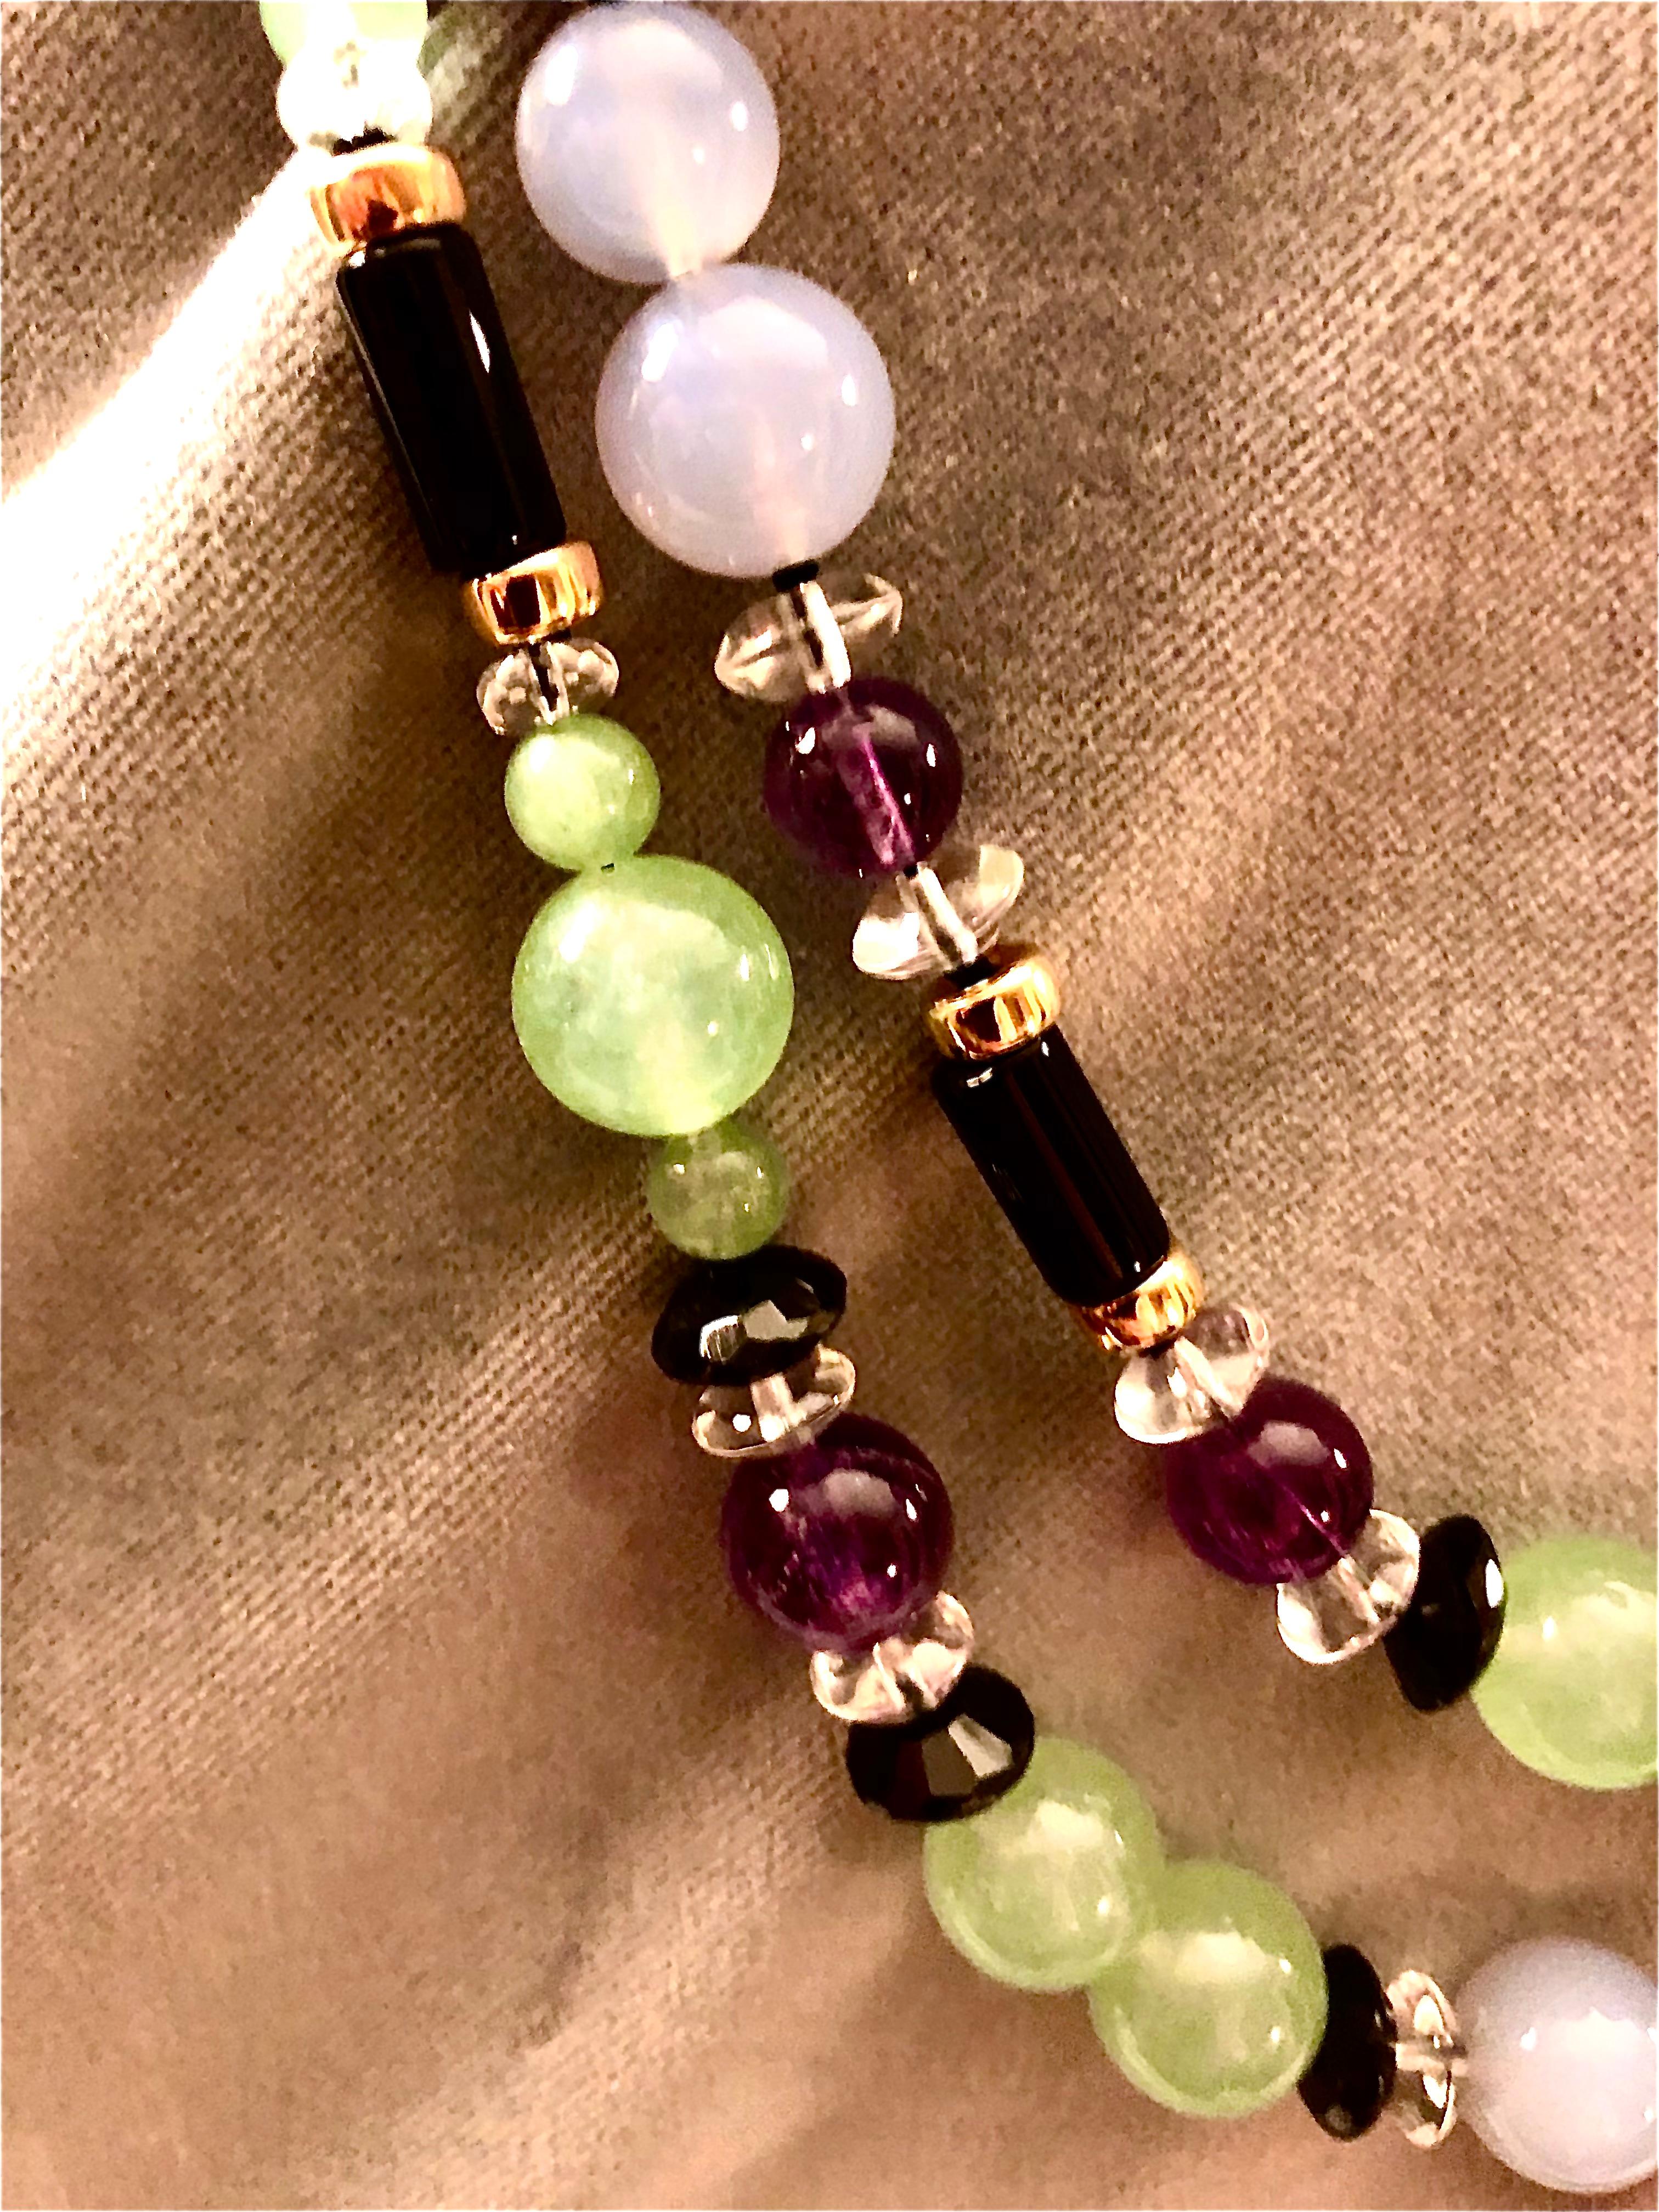 Magnifique paire de colliers en pierres mélangées, élégamment simple, avec de grandes perles de jade lumineuses, de riches perles d'améthyste violette et de l'onyx noir poli, couronné de rondelles d'or 14kt.  Les perles de jade et de calcédoine de